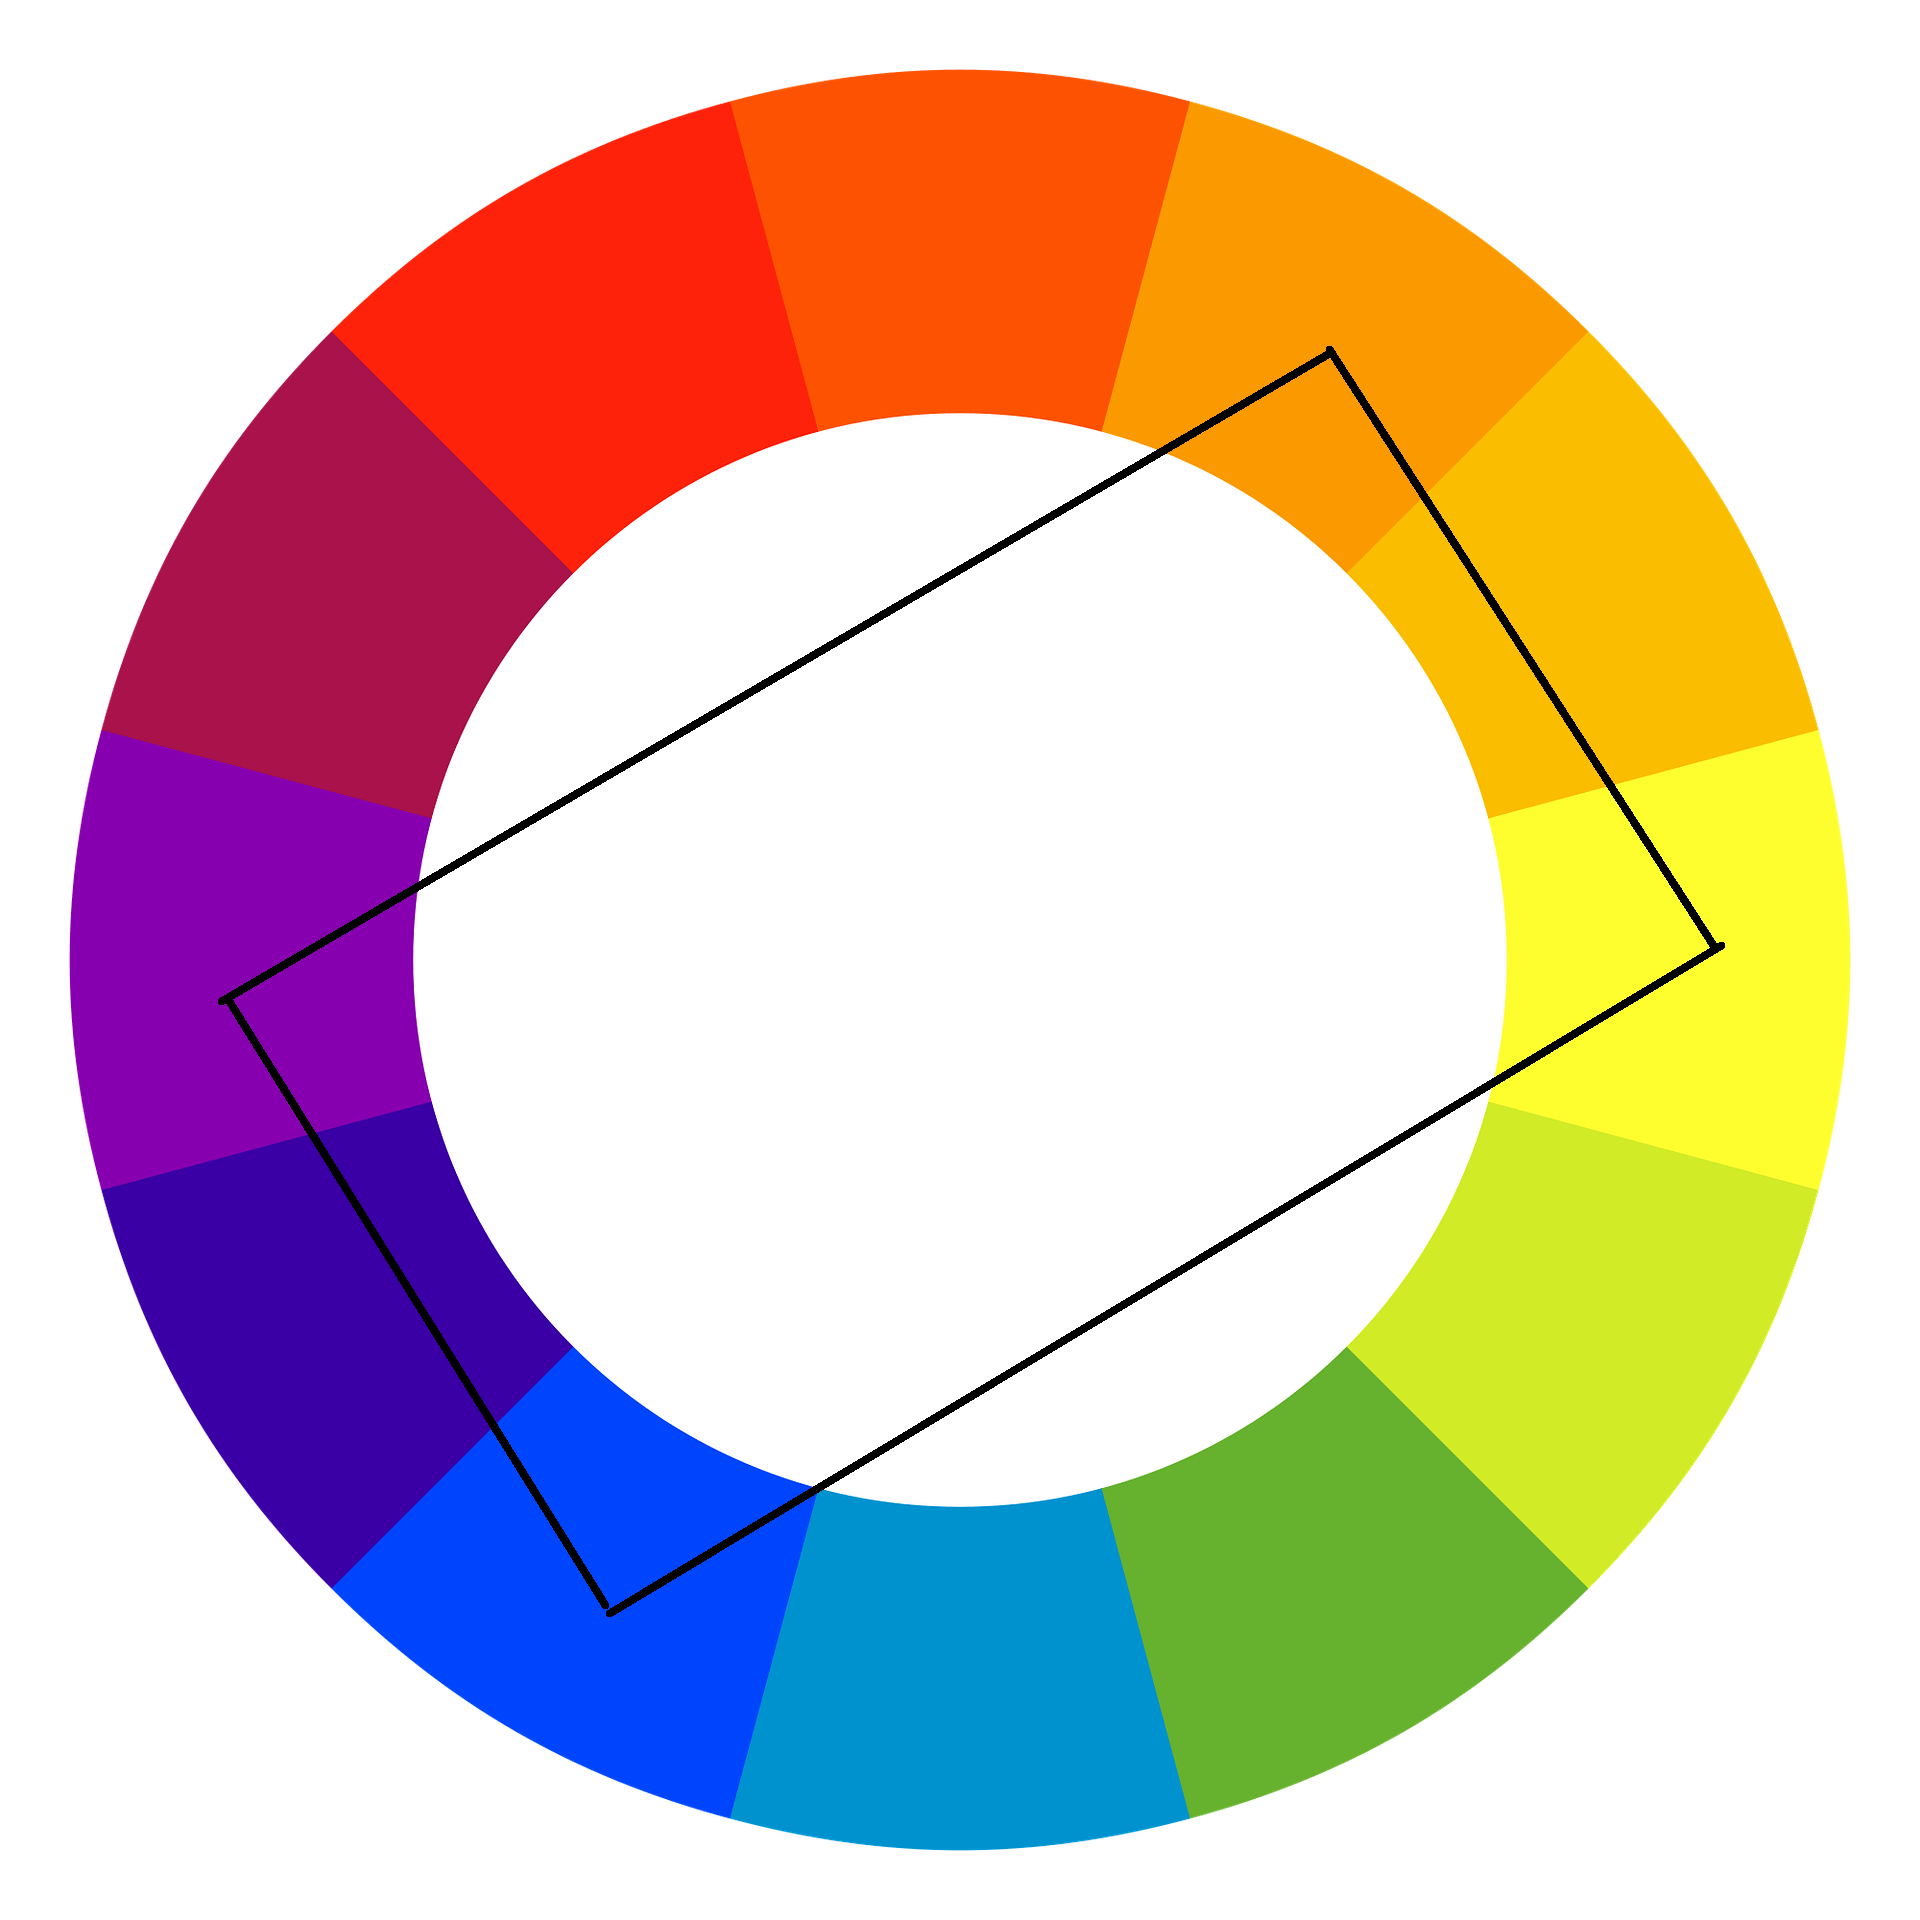 Koło kolorów w sprzedaży i marketingu - reguła 4 kolorów